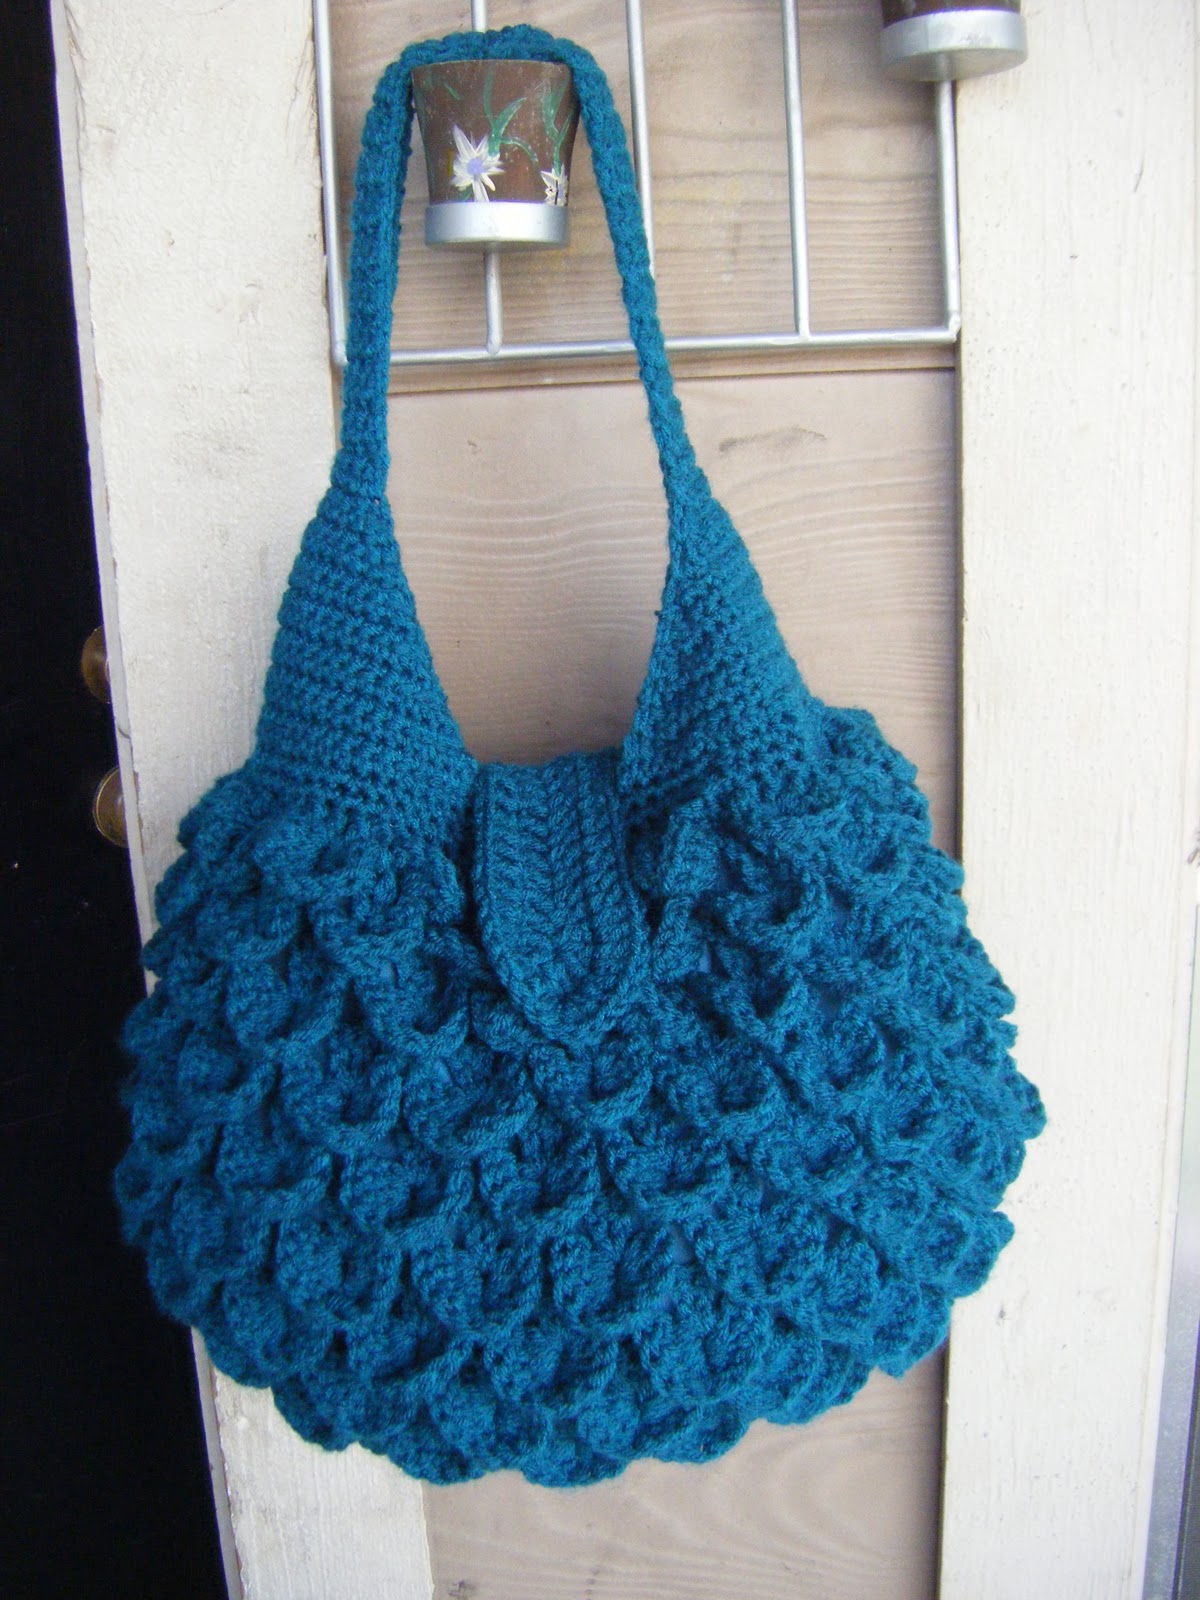 CROCHET SHOPPING BAG PATTERN – Crochet Club